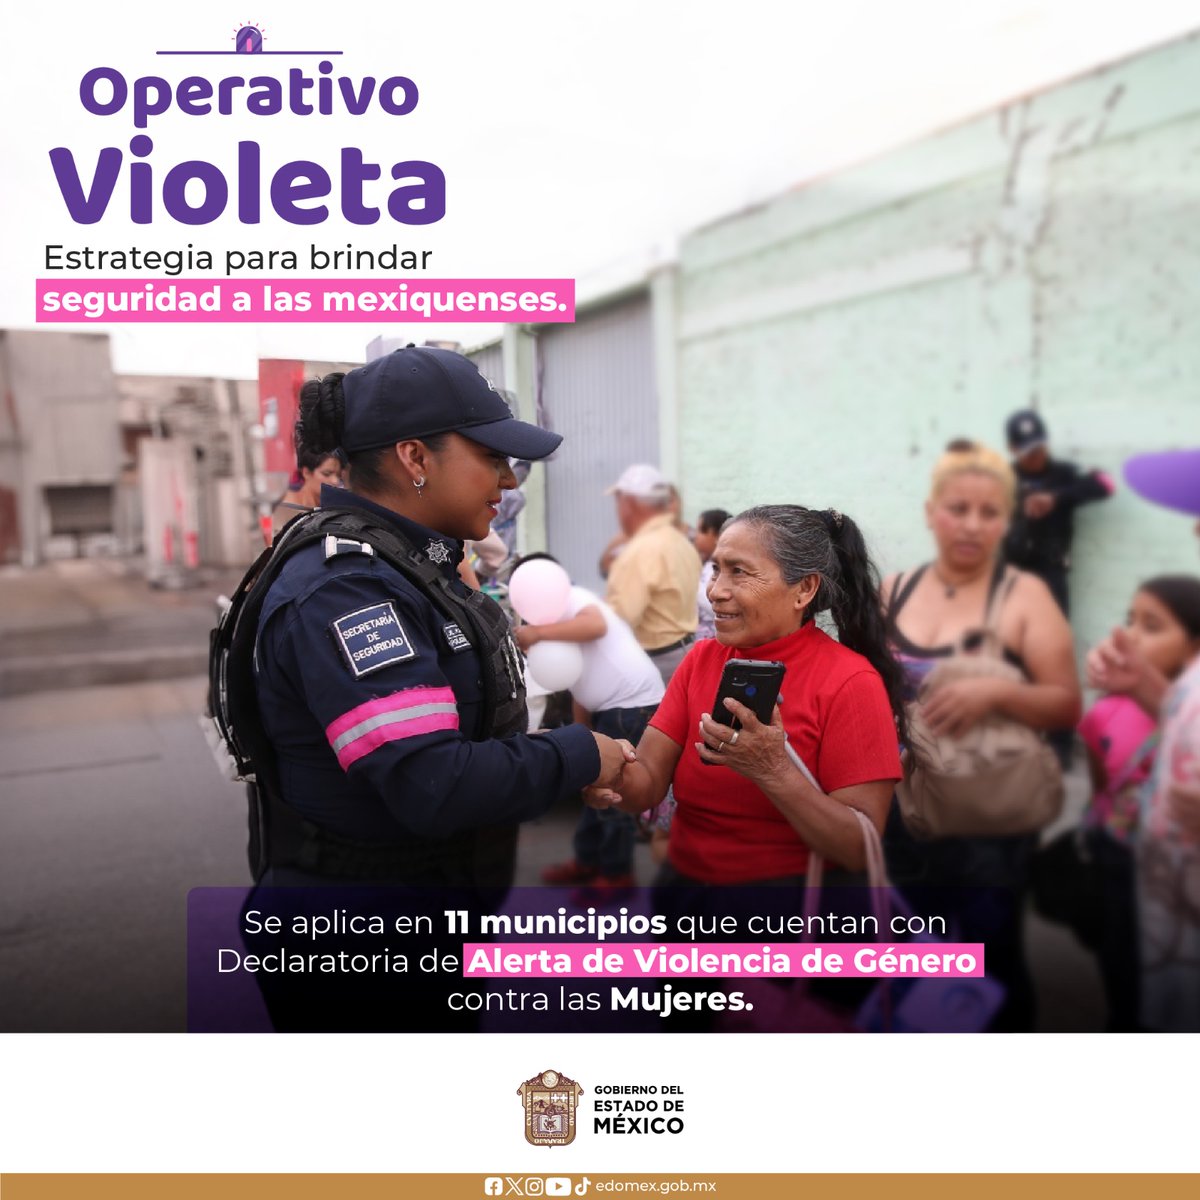 El Operativo Violeta es una estrategia implementada en el Estado de México para salvaguardad la seguridad de las mexiquenses. Se aplica en once municipios de la entidad, que cuentan con Alerta de Violencia de Género contra las Mujeres.